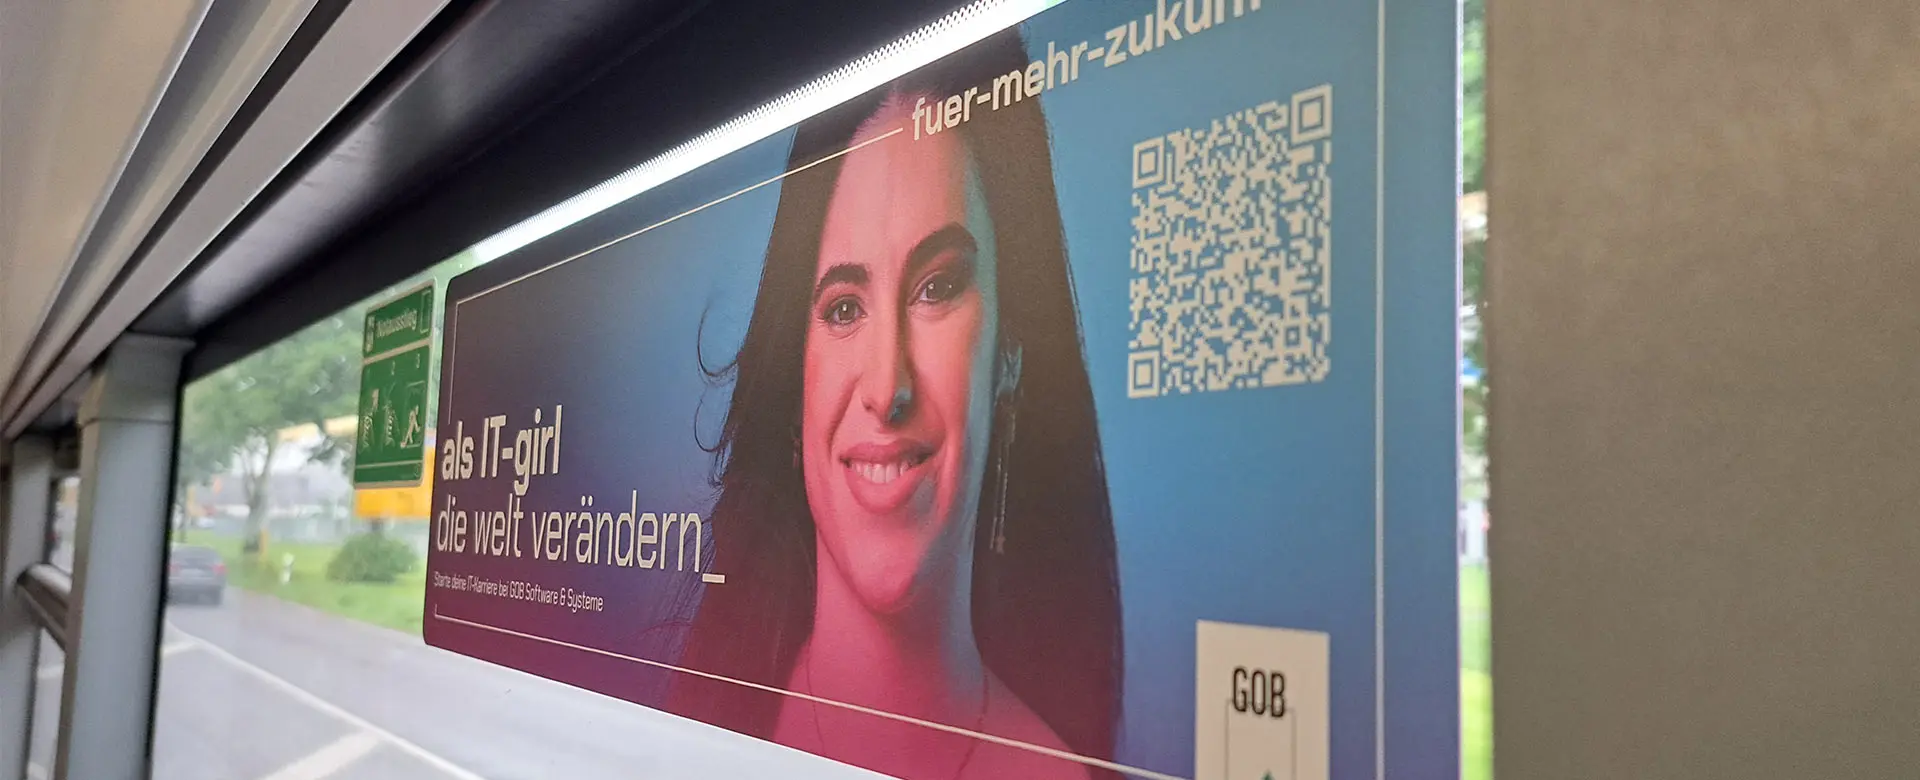 Headerbild mit IT-Girl auf FuerMehrZukunft-Seitenscheibenplakat in Krefelder Bahn